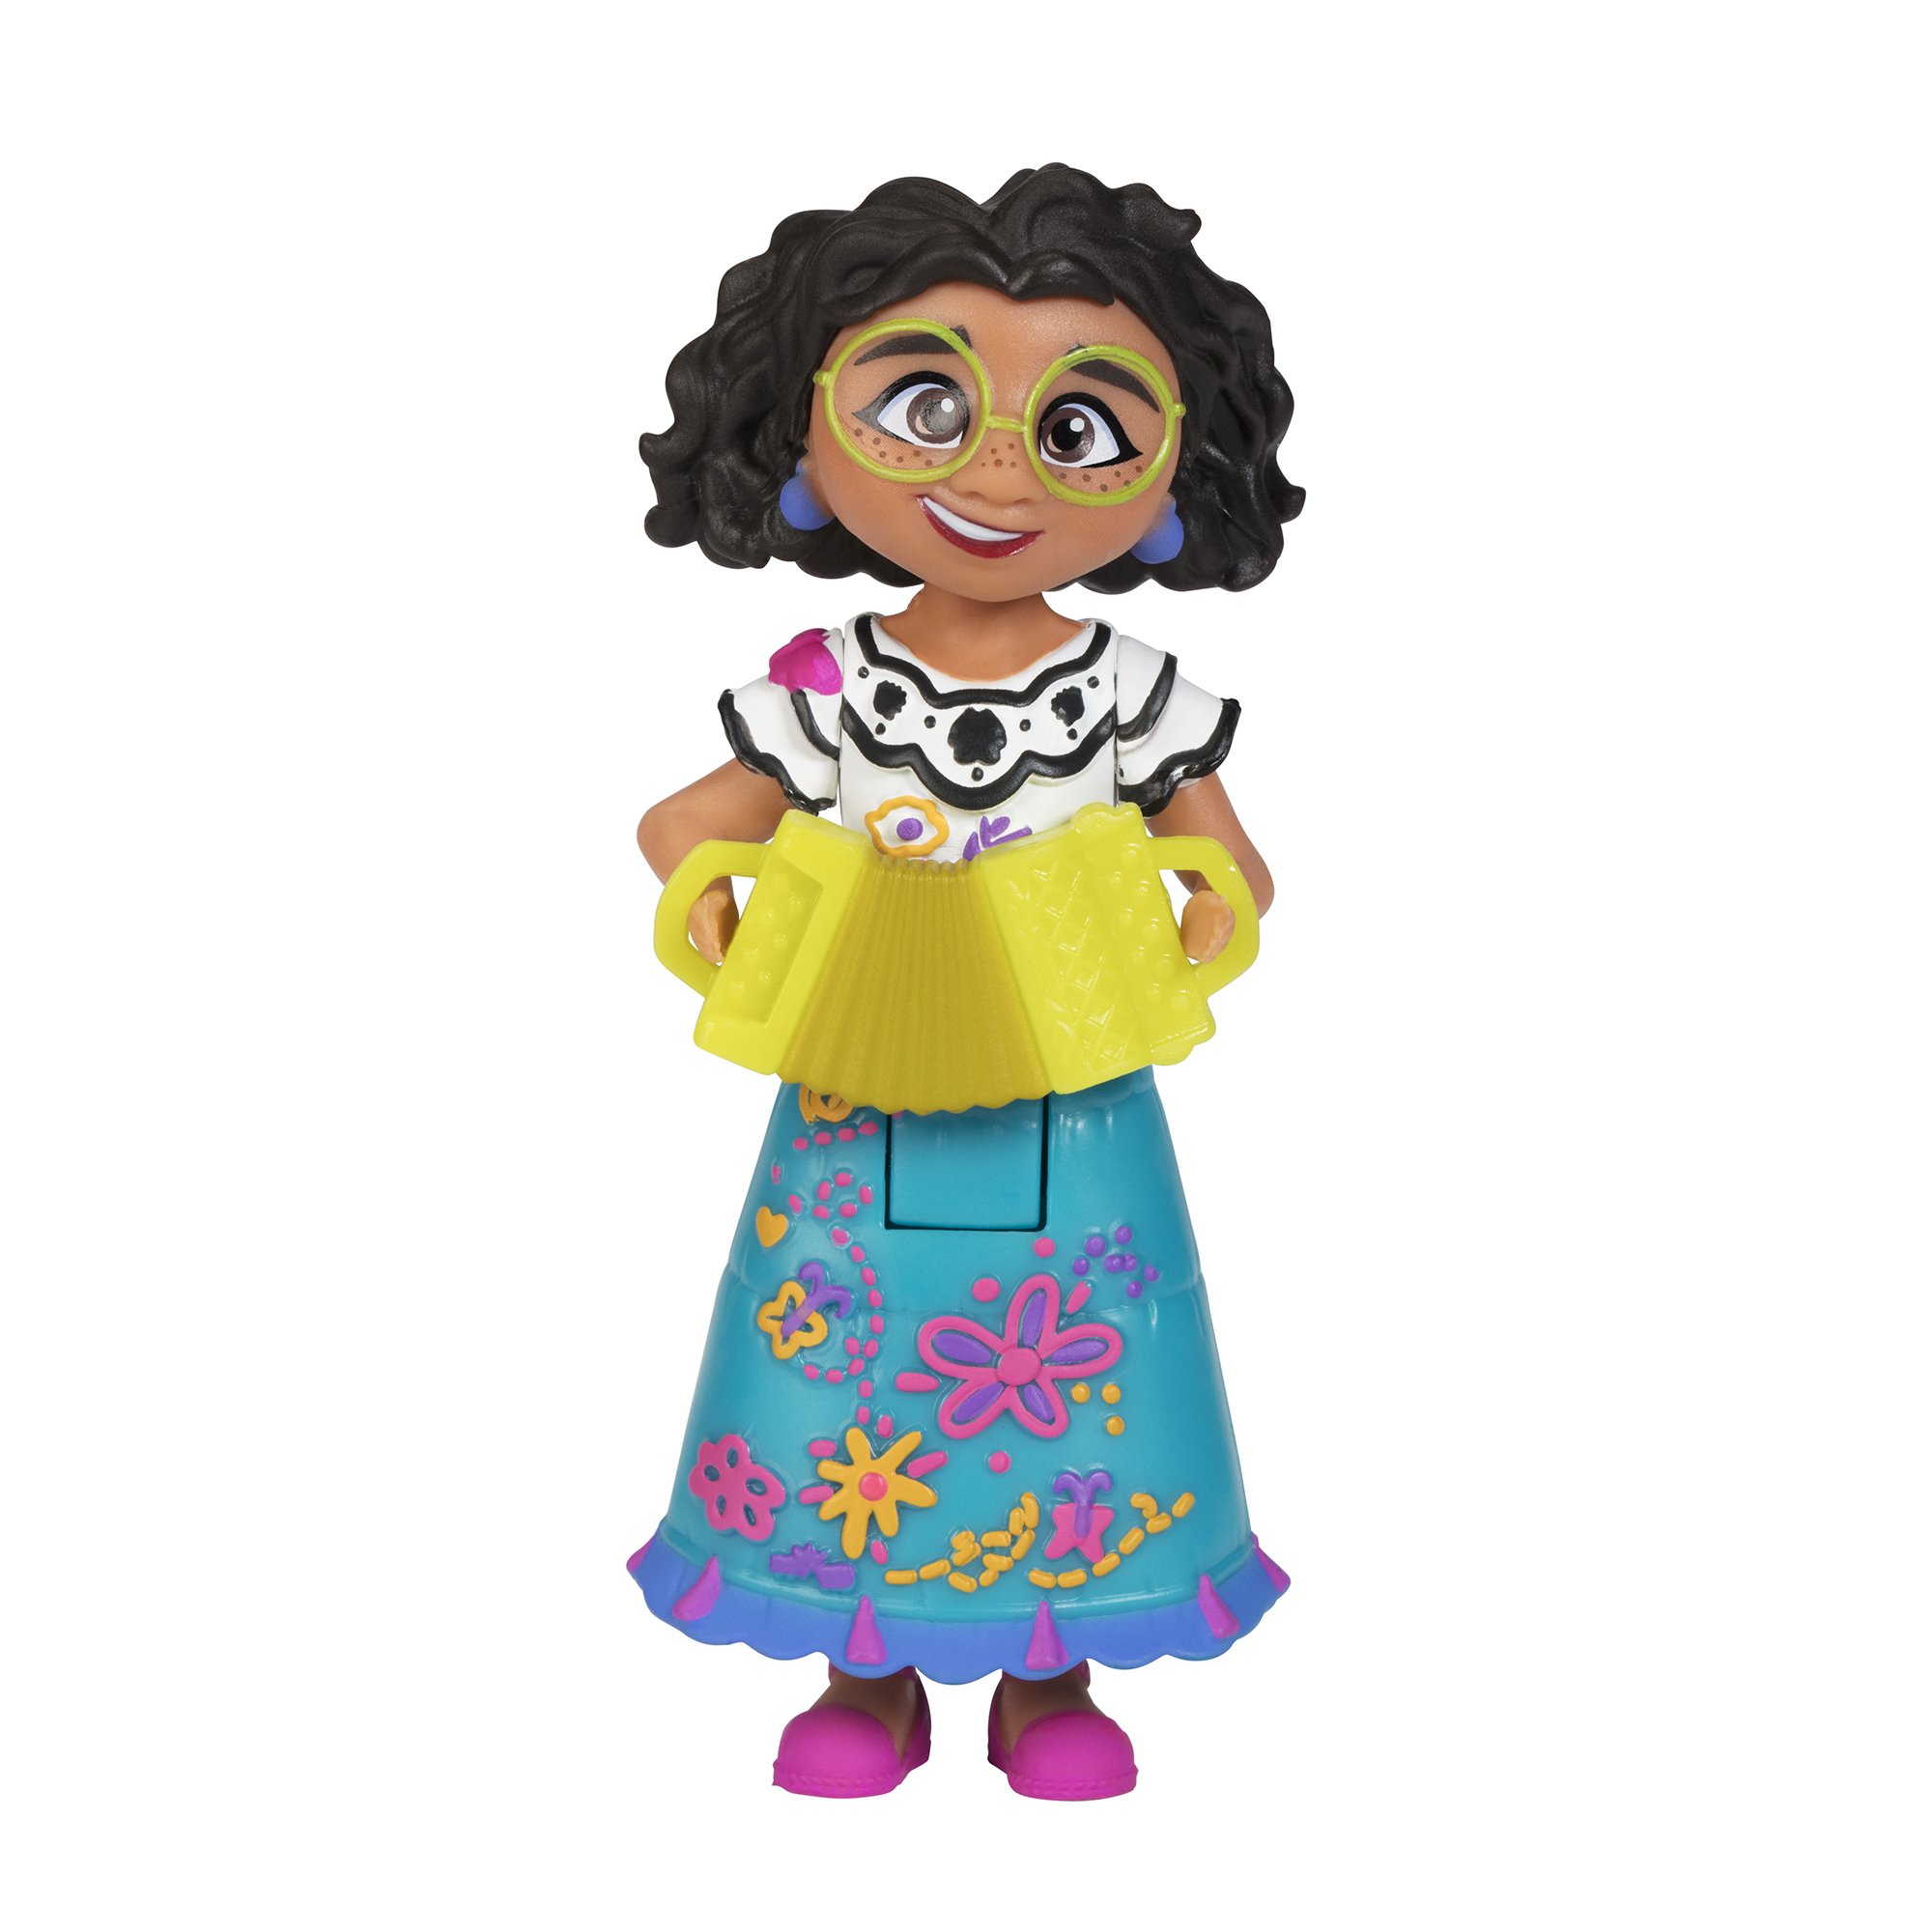 Mirabel Madrigal 3” Small Doll - JAKKS Pacific, Inc.